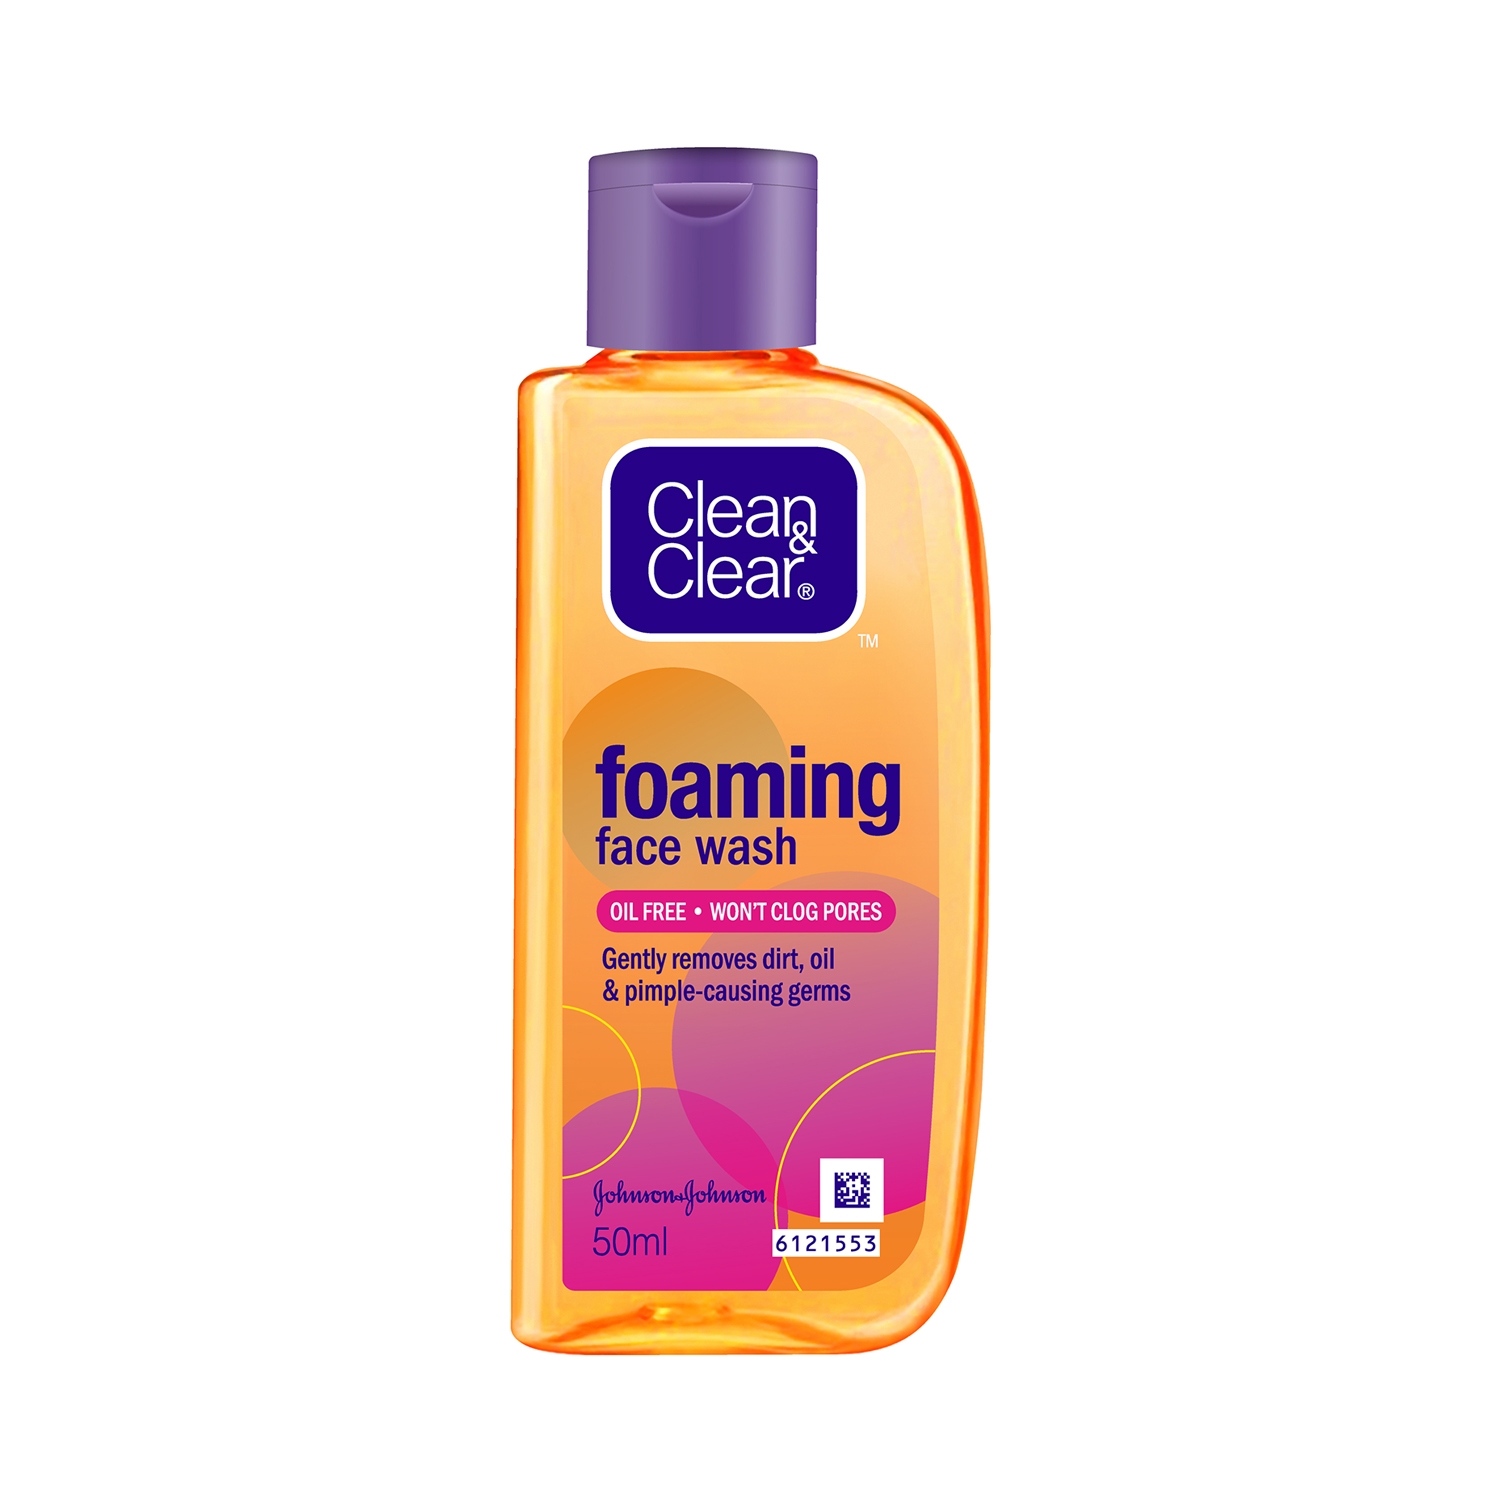 Clean & Clear Foaming Facial Wash (50ml)